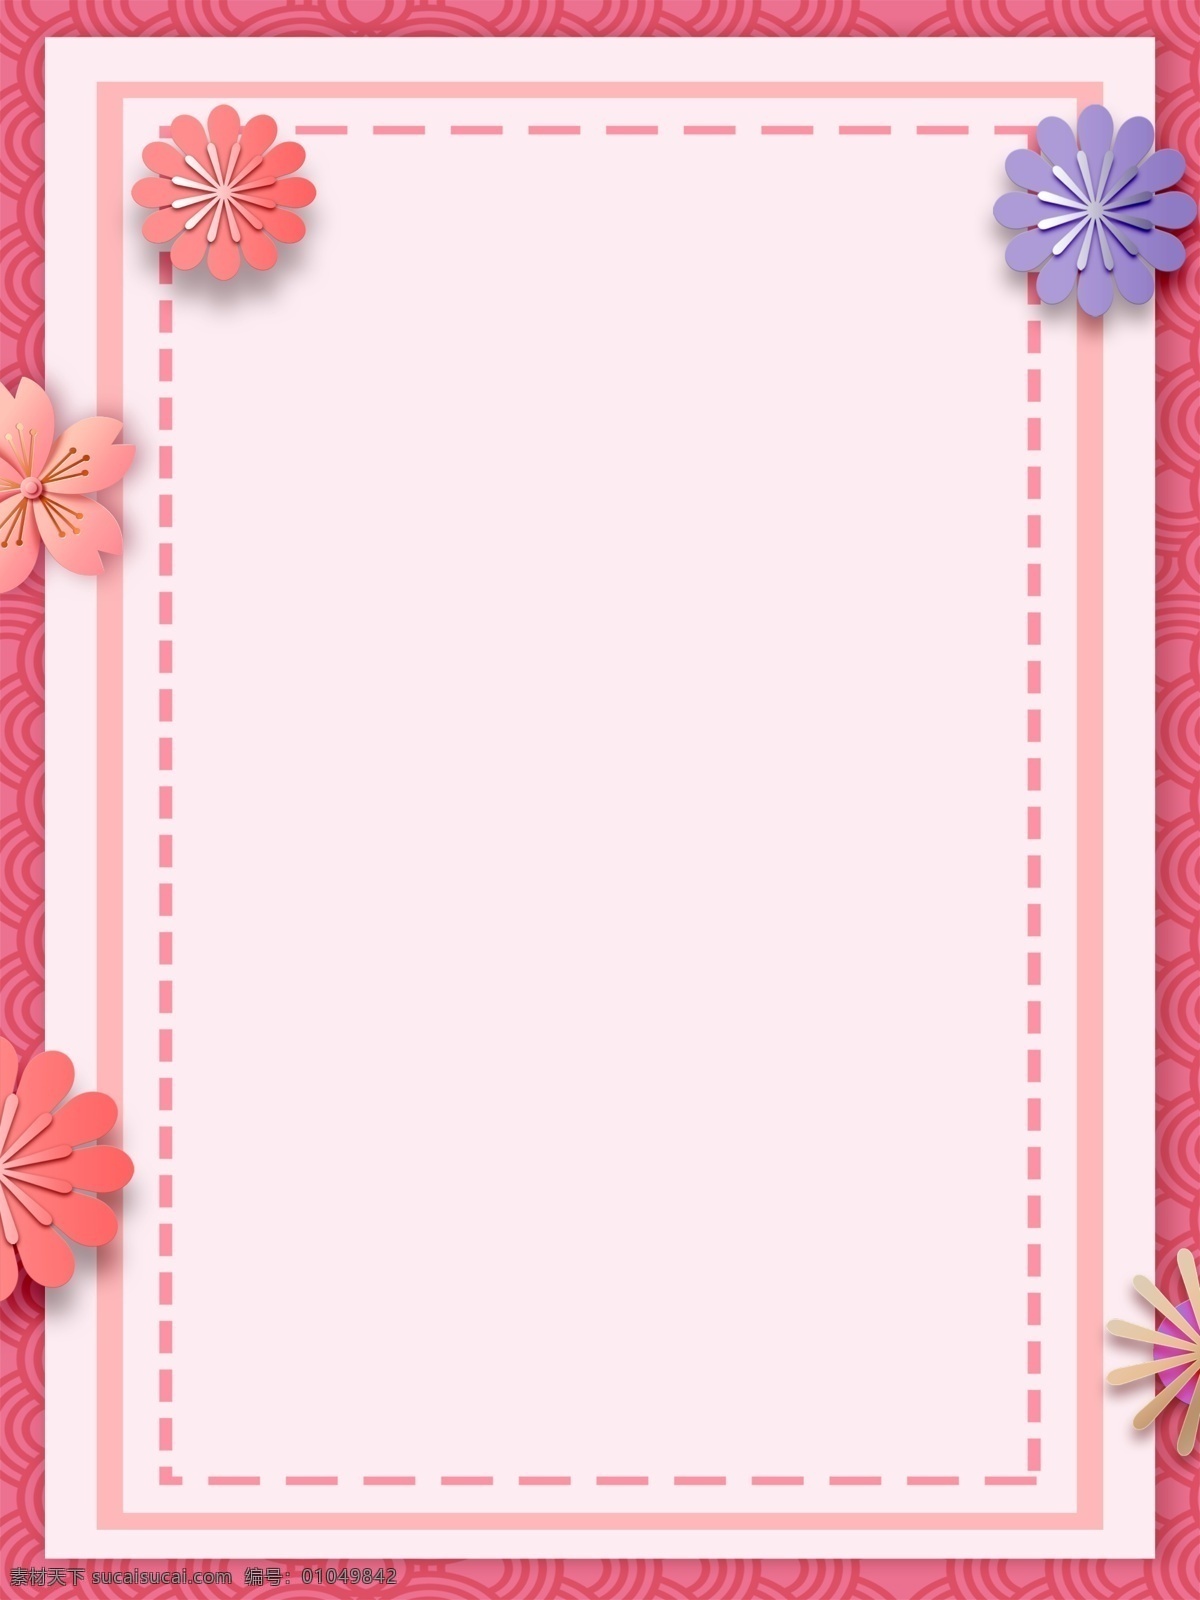 简约 粉色 花朵 通用 背景 边框 创意 背景素材 花朵背景 背景设计 特邀背景 通用素材